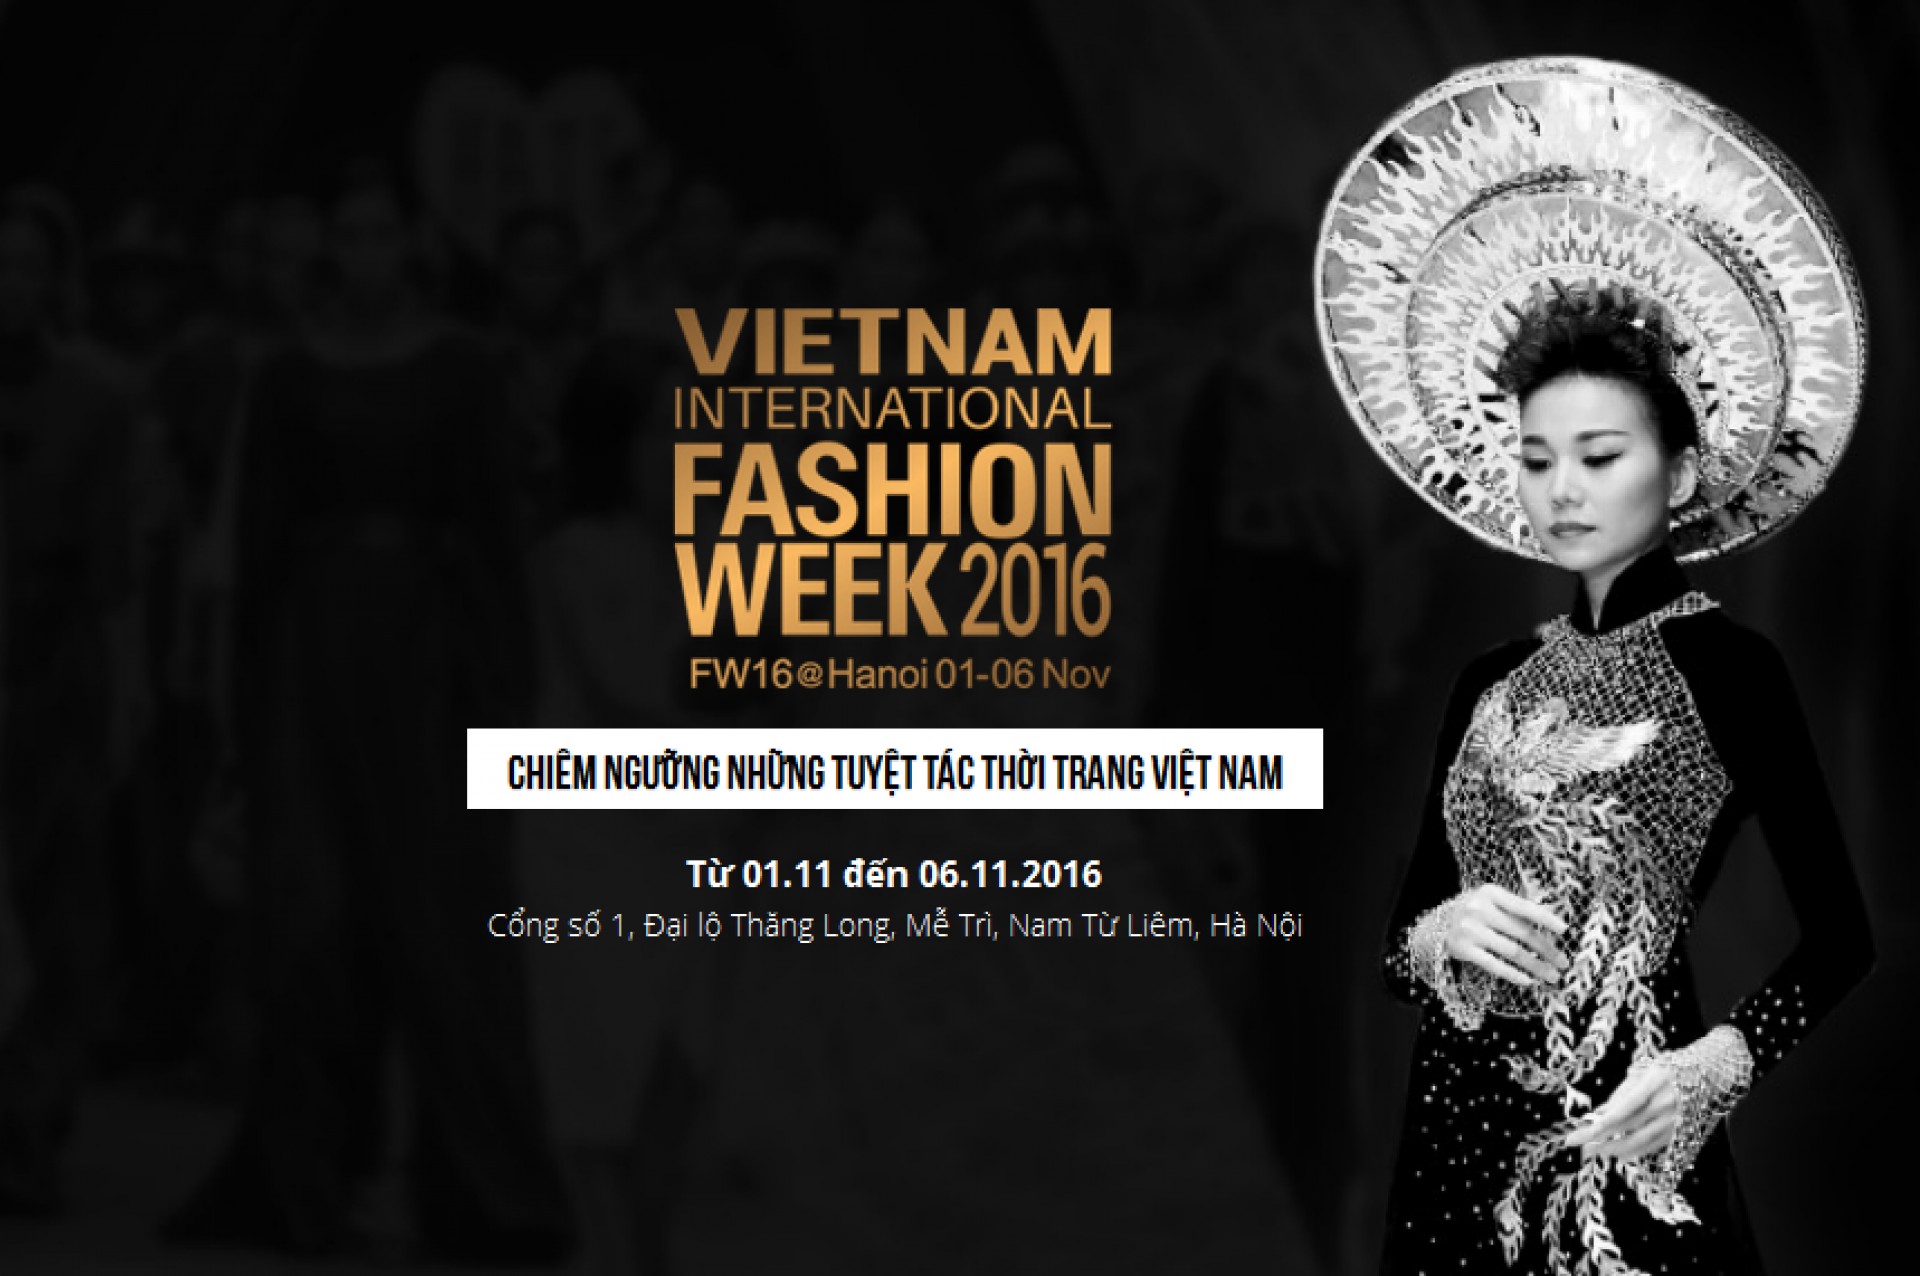 VIETNAM INTERNATIONAL FASHION WEEK 2016 - Sự kiện thời trang ĐẲNG CẤP nhất tại Việt Nam